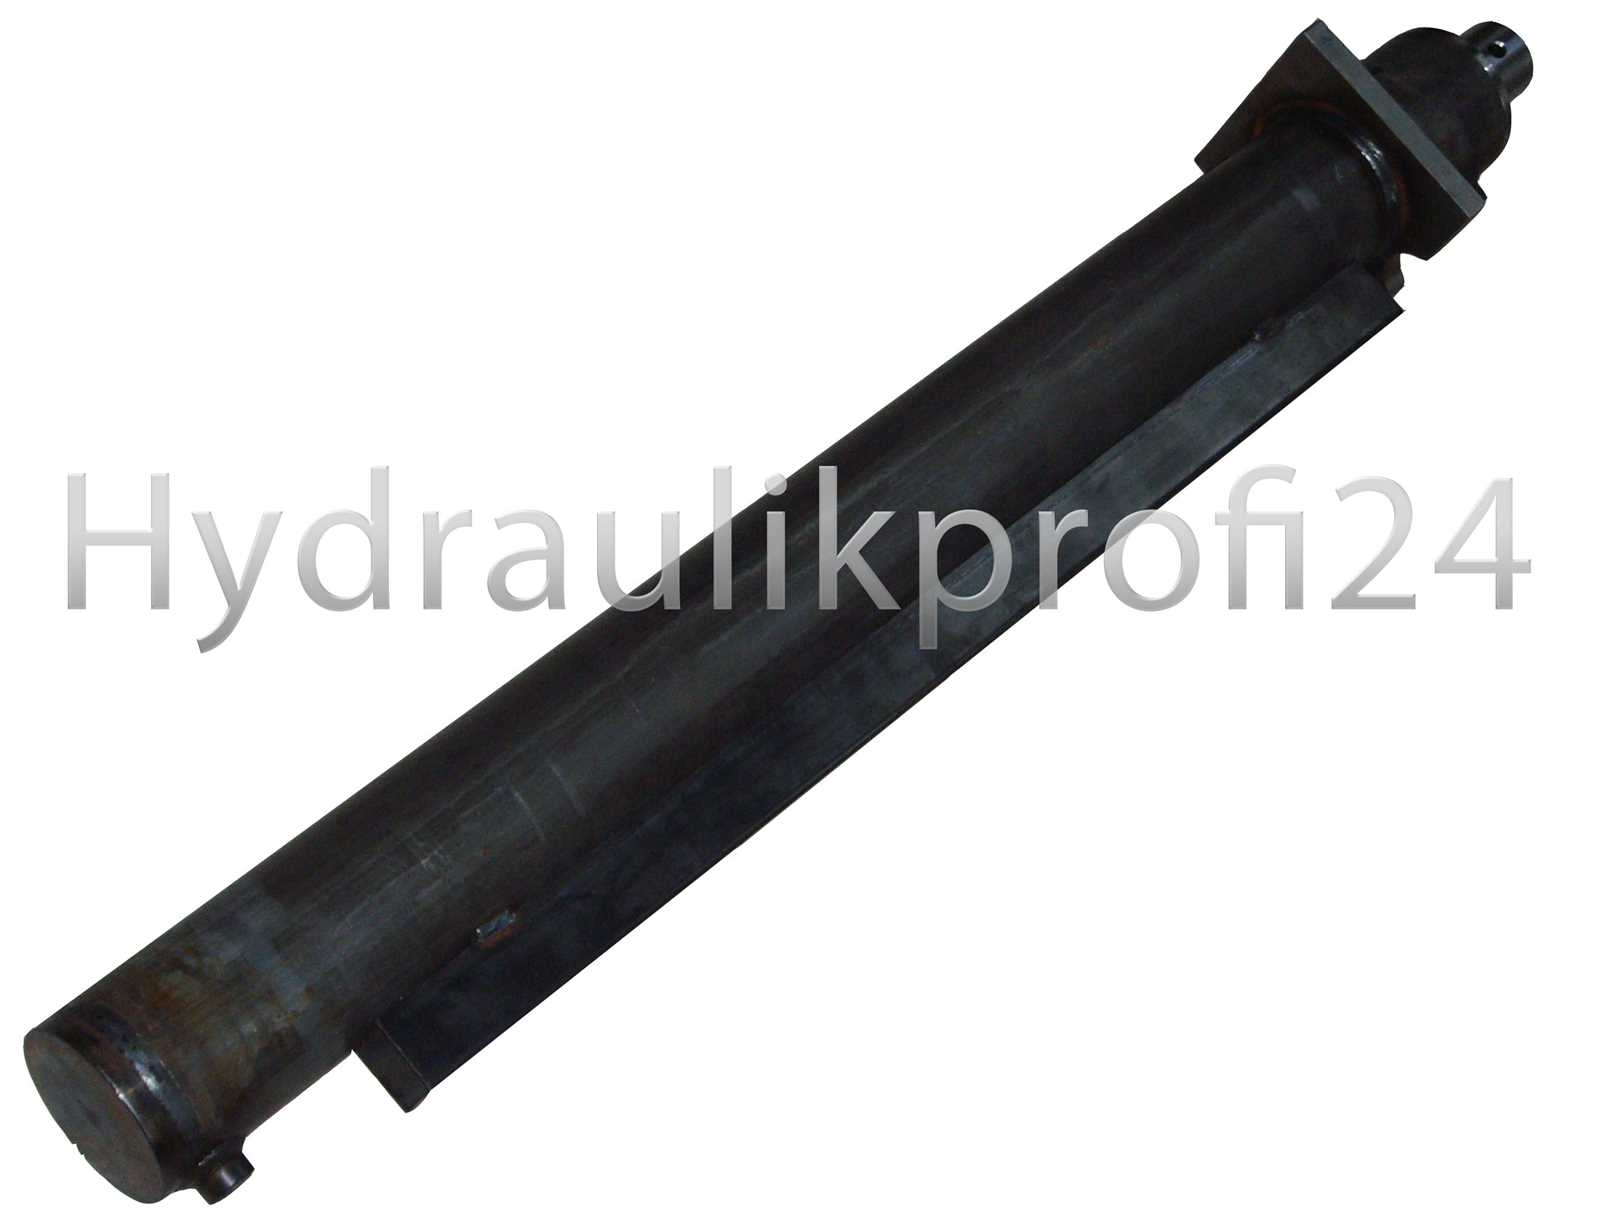 Hydraulikzylinder Holzspalterzylinder 60-100-2200 ohne Befestigung mit Flansch